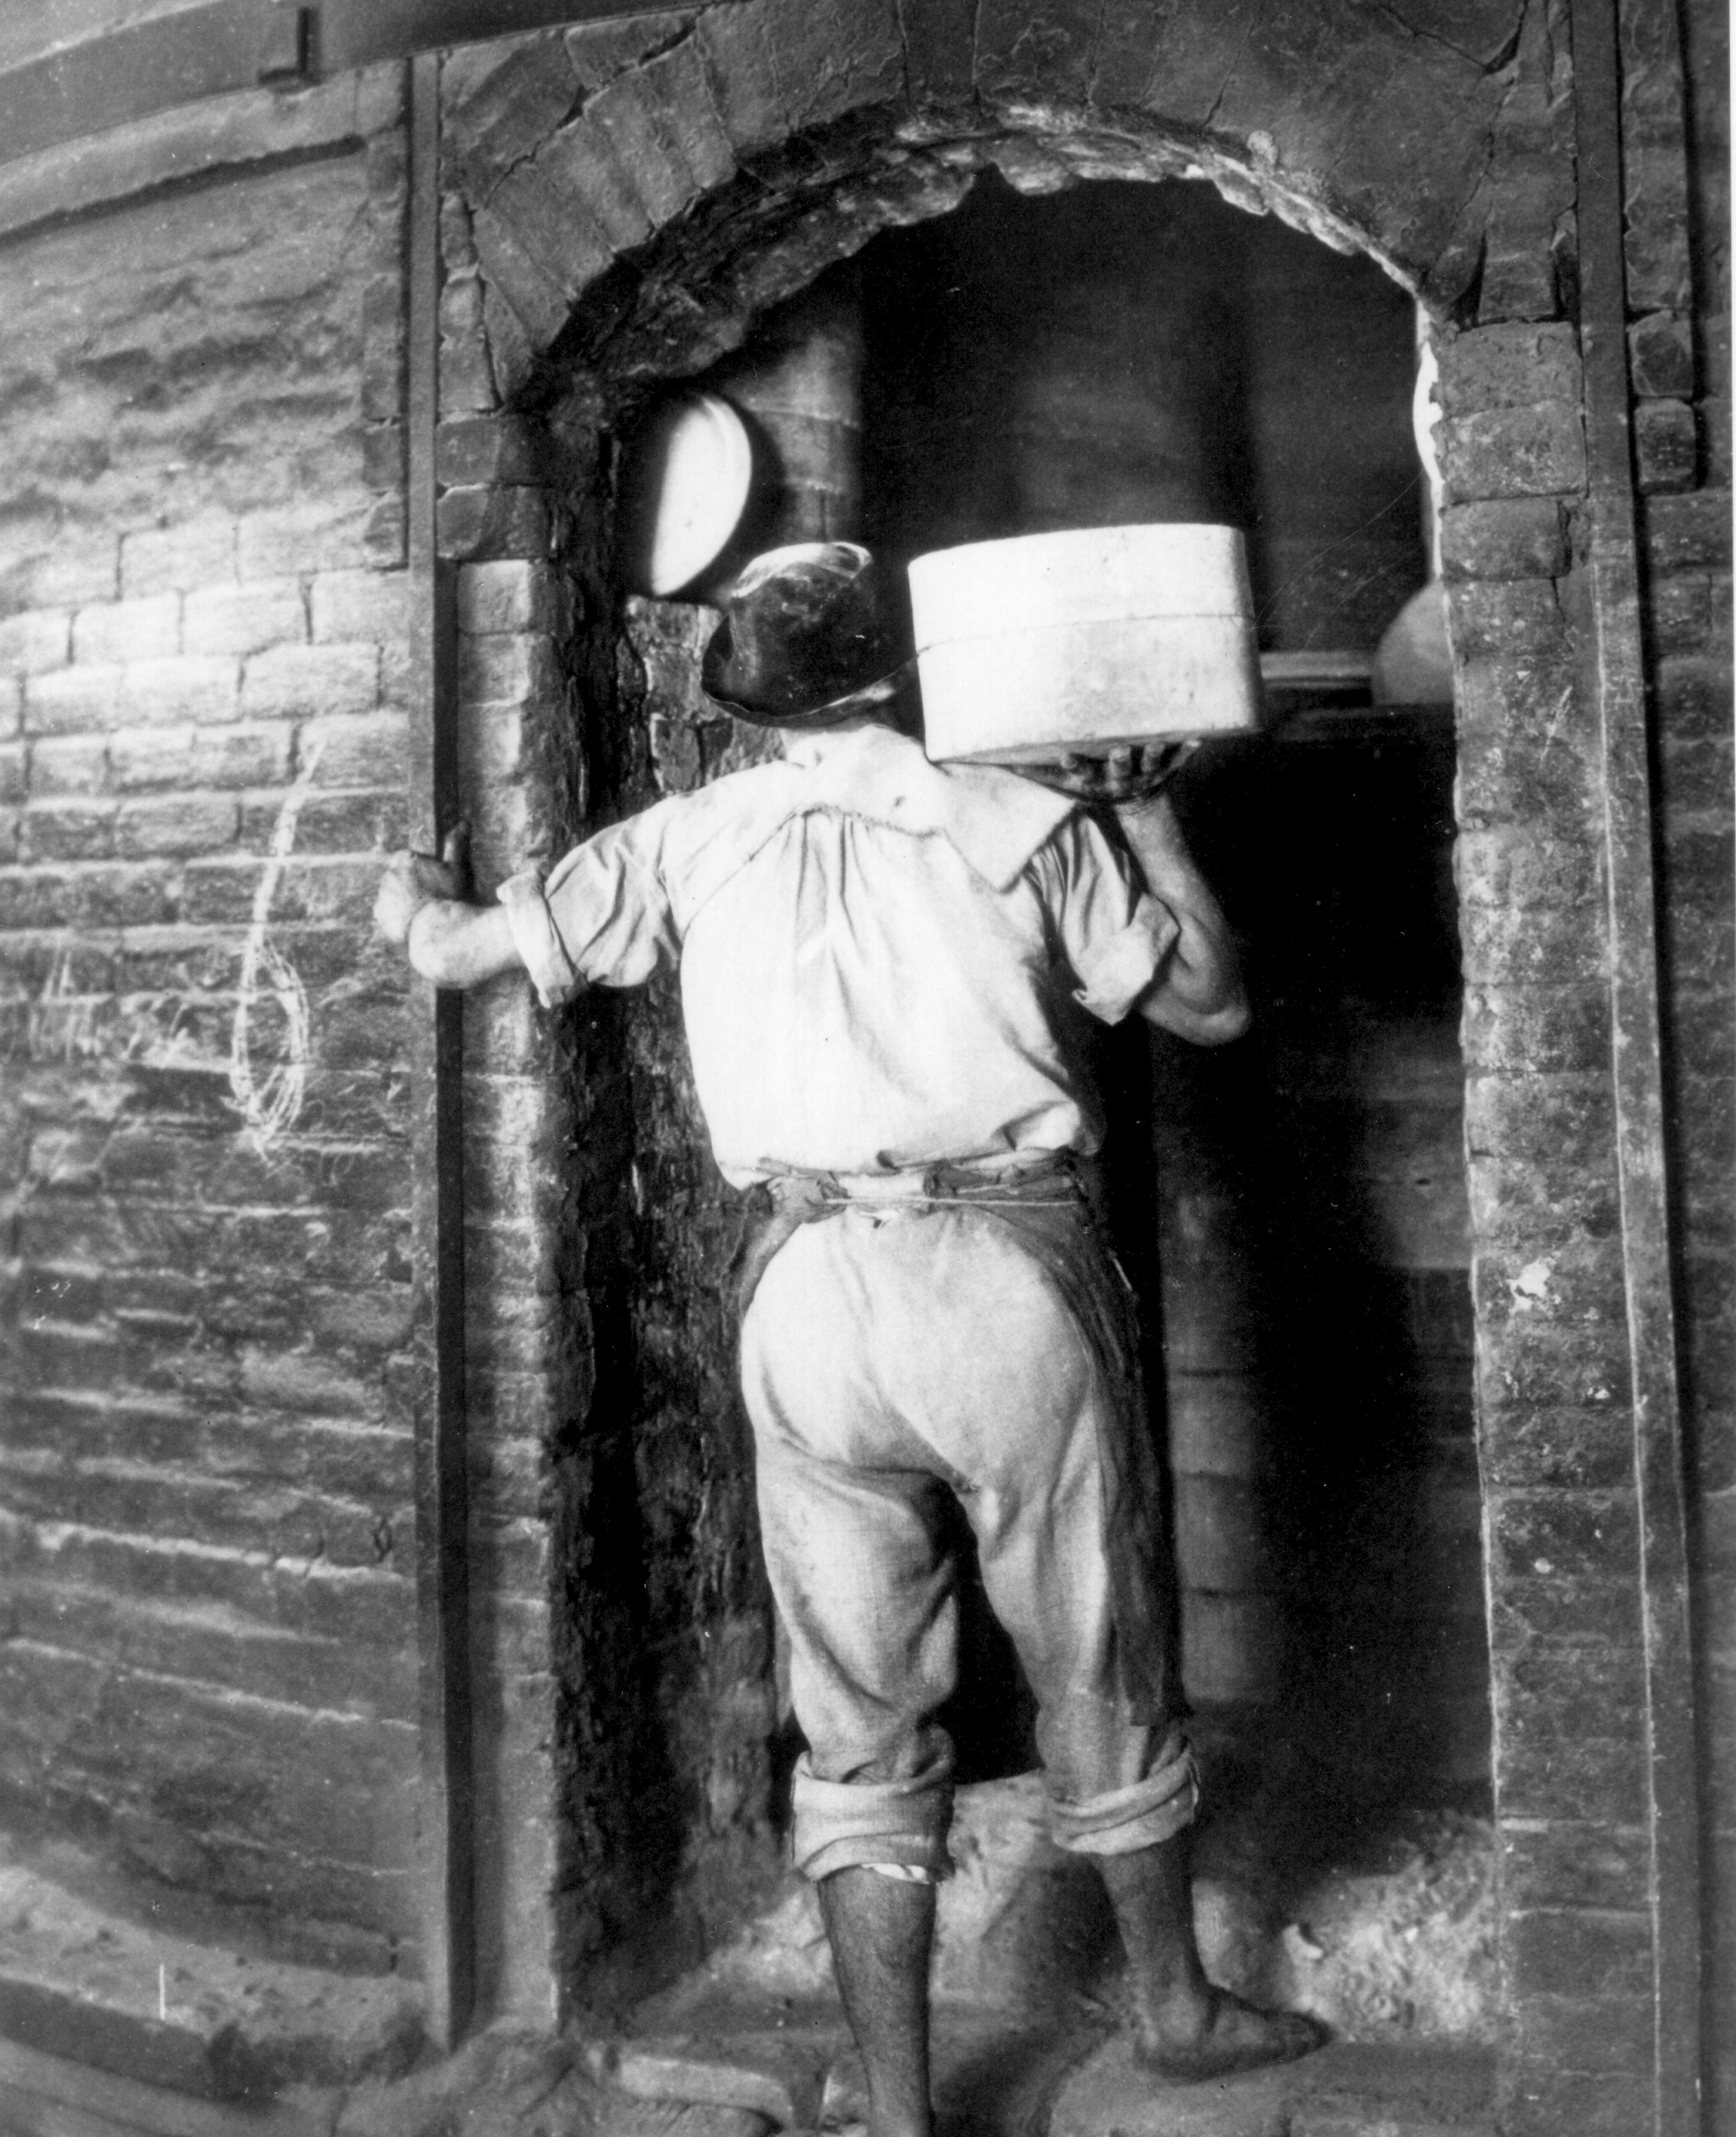 Un uomo in abiti da lavoro fotografato in bianco e nero mentre entra in un forno